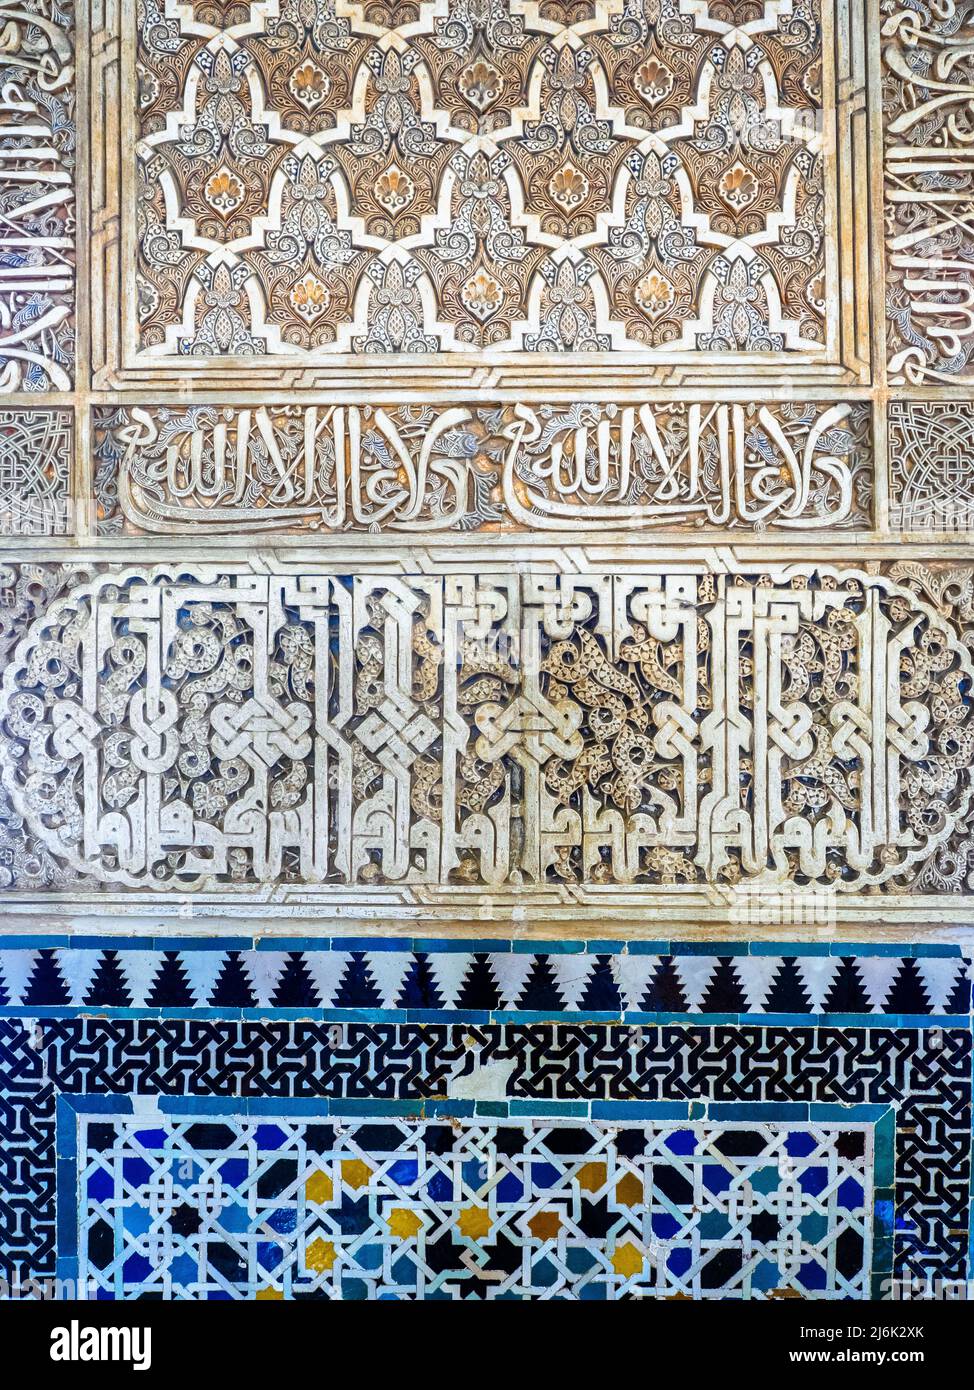 Détail du mur orné dans la salle des Ambassadeurs à Comares Palais du complexe des palais royaux de Nasrid - complexe de l'Alhambra - Grenade, Espagne Banque D'Images